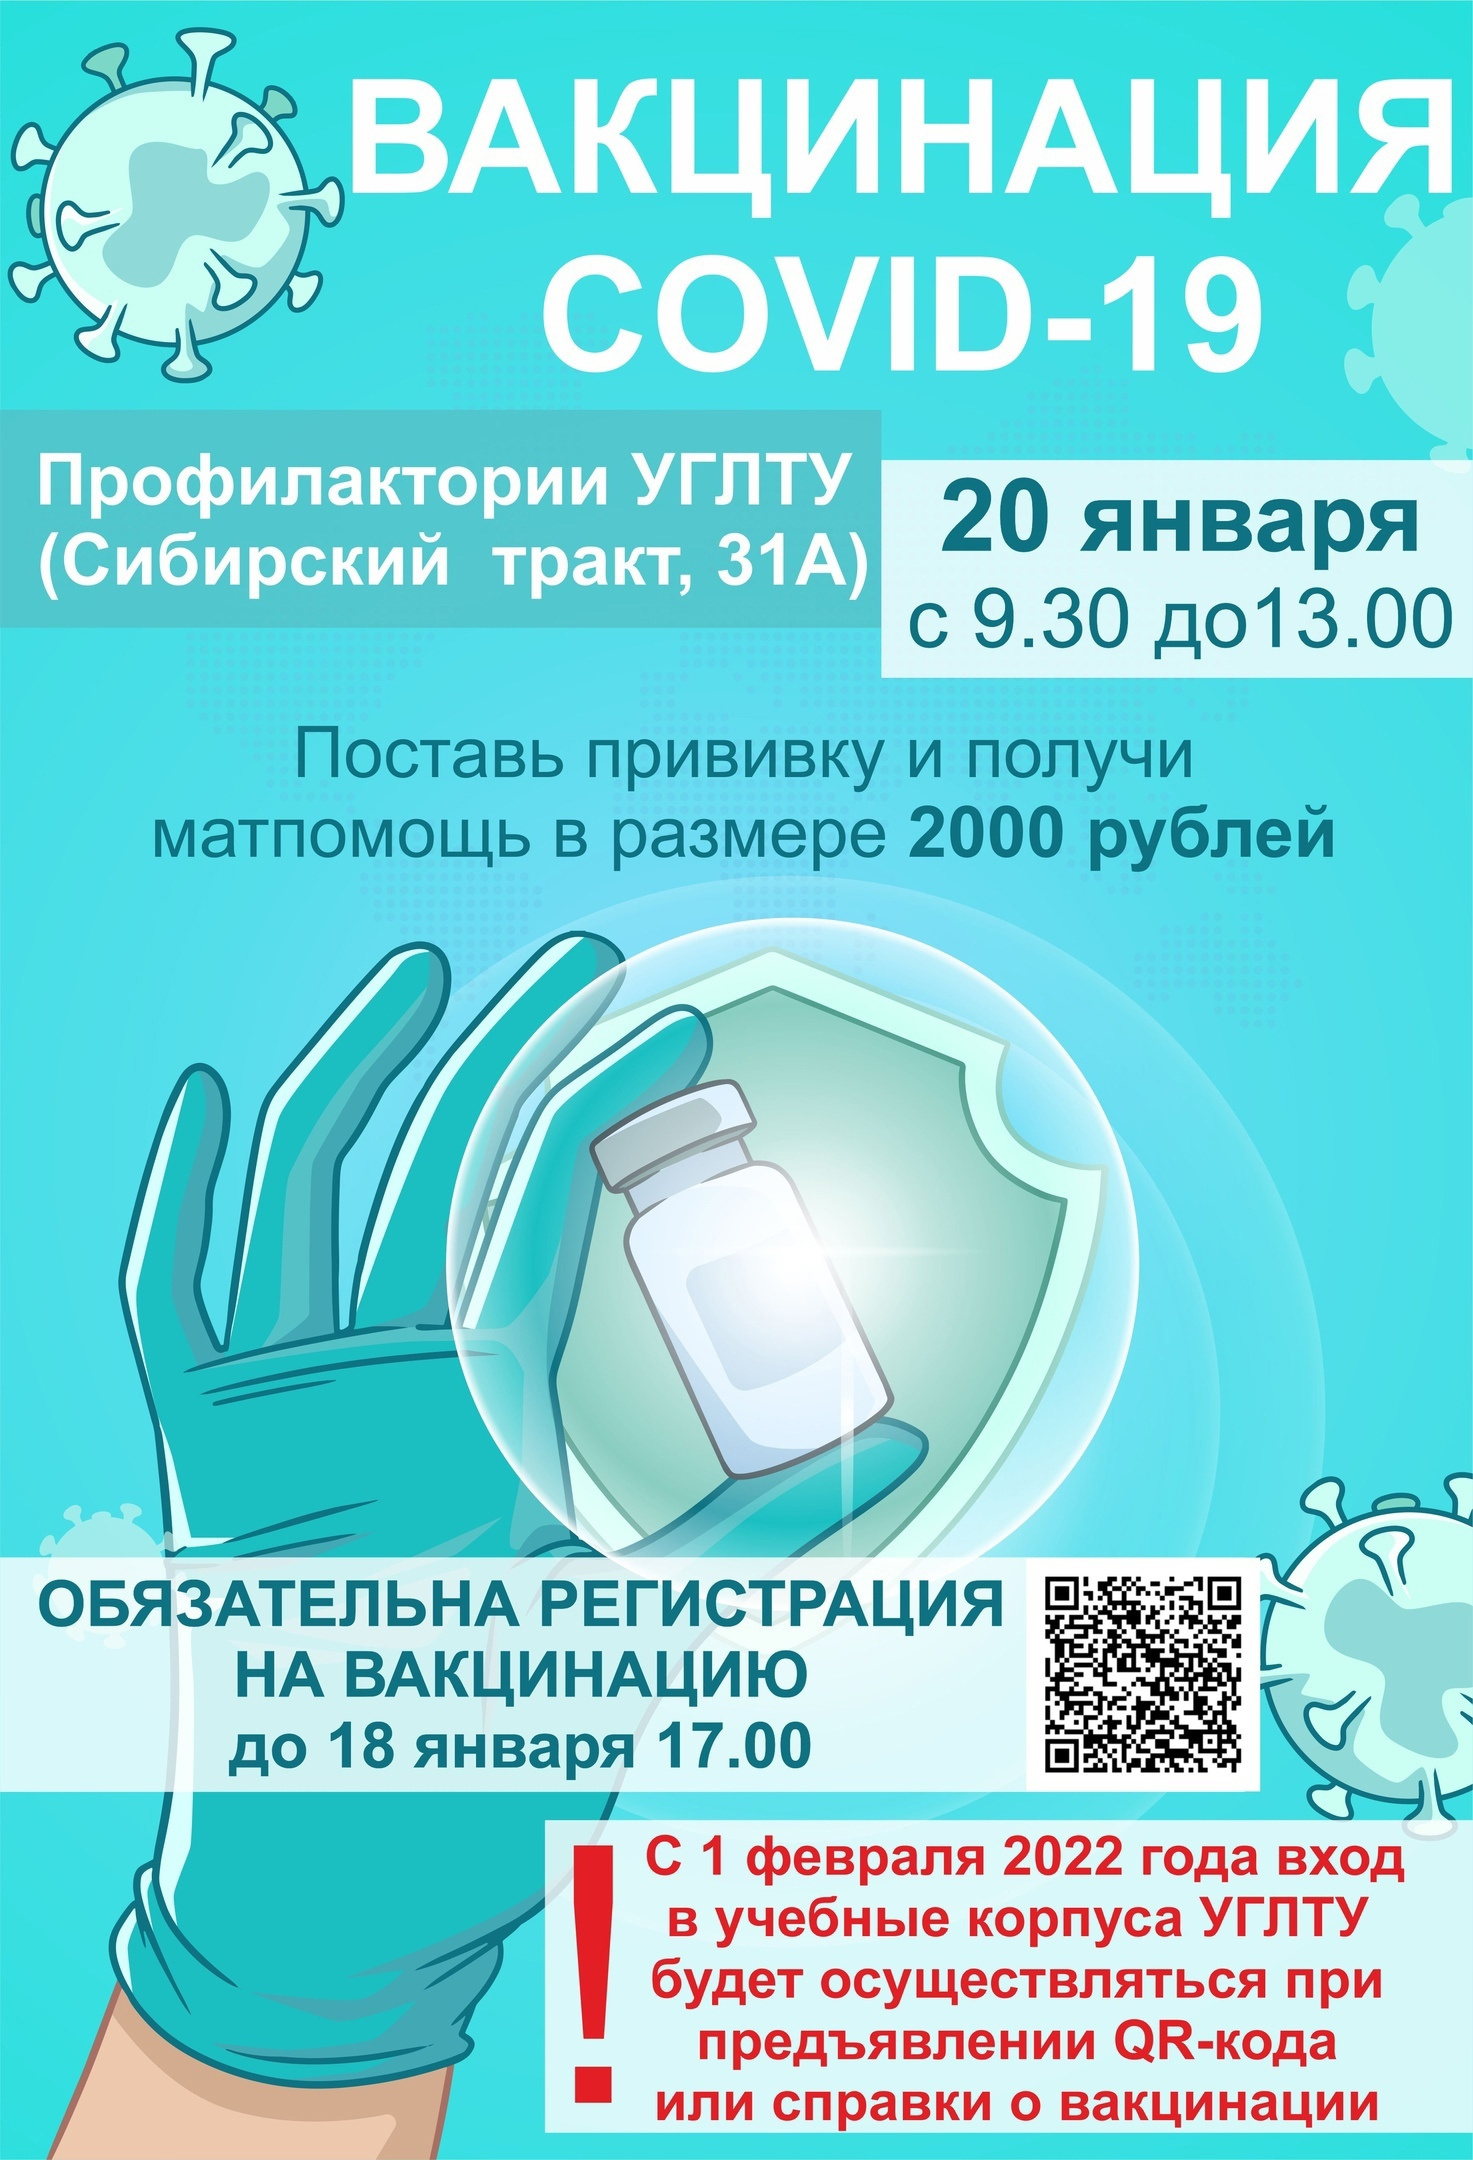 Студентам предлагают получить две тысячи рублей за прививку от коронавируса